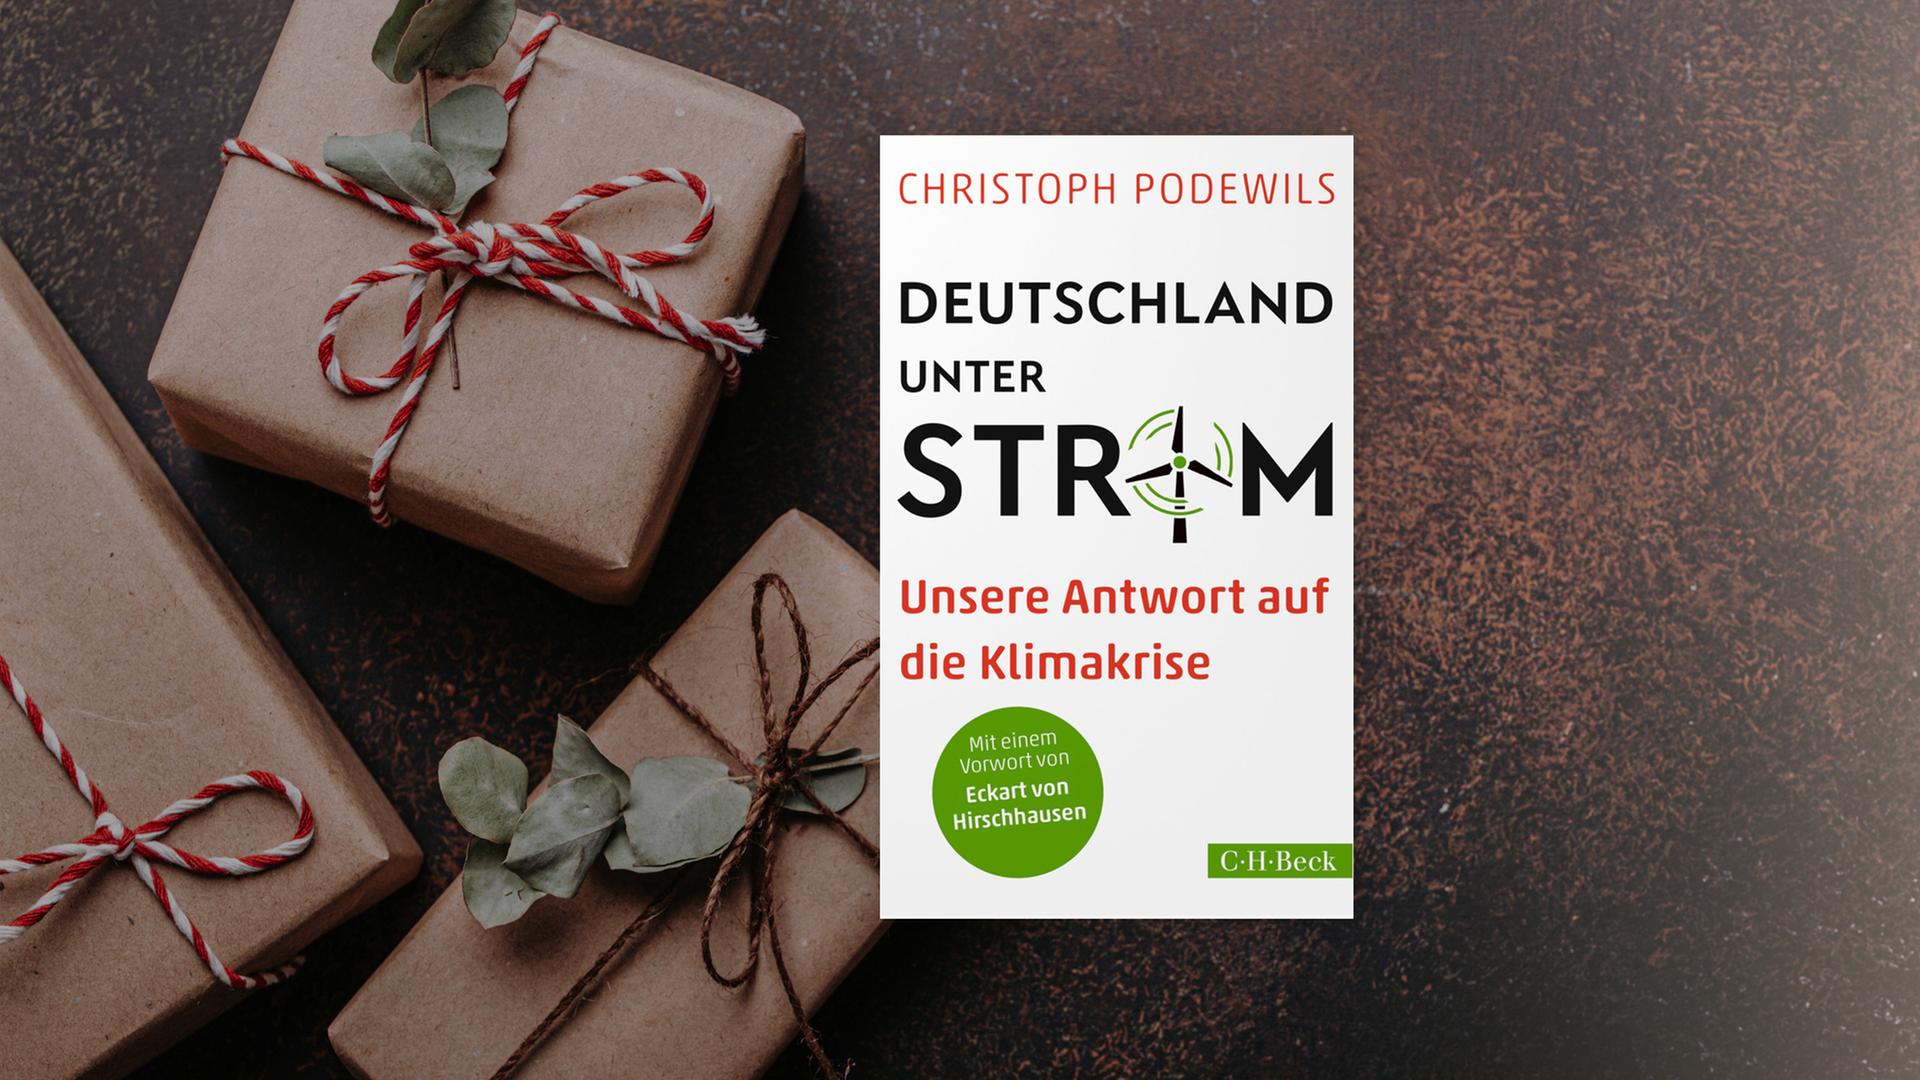 Buchcover von "Deutschland unter Strom" von Christoph Podewils.  Im Hintergrund sind graue Päckchen mit rot-weißen Schleifen zu sehen. 